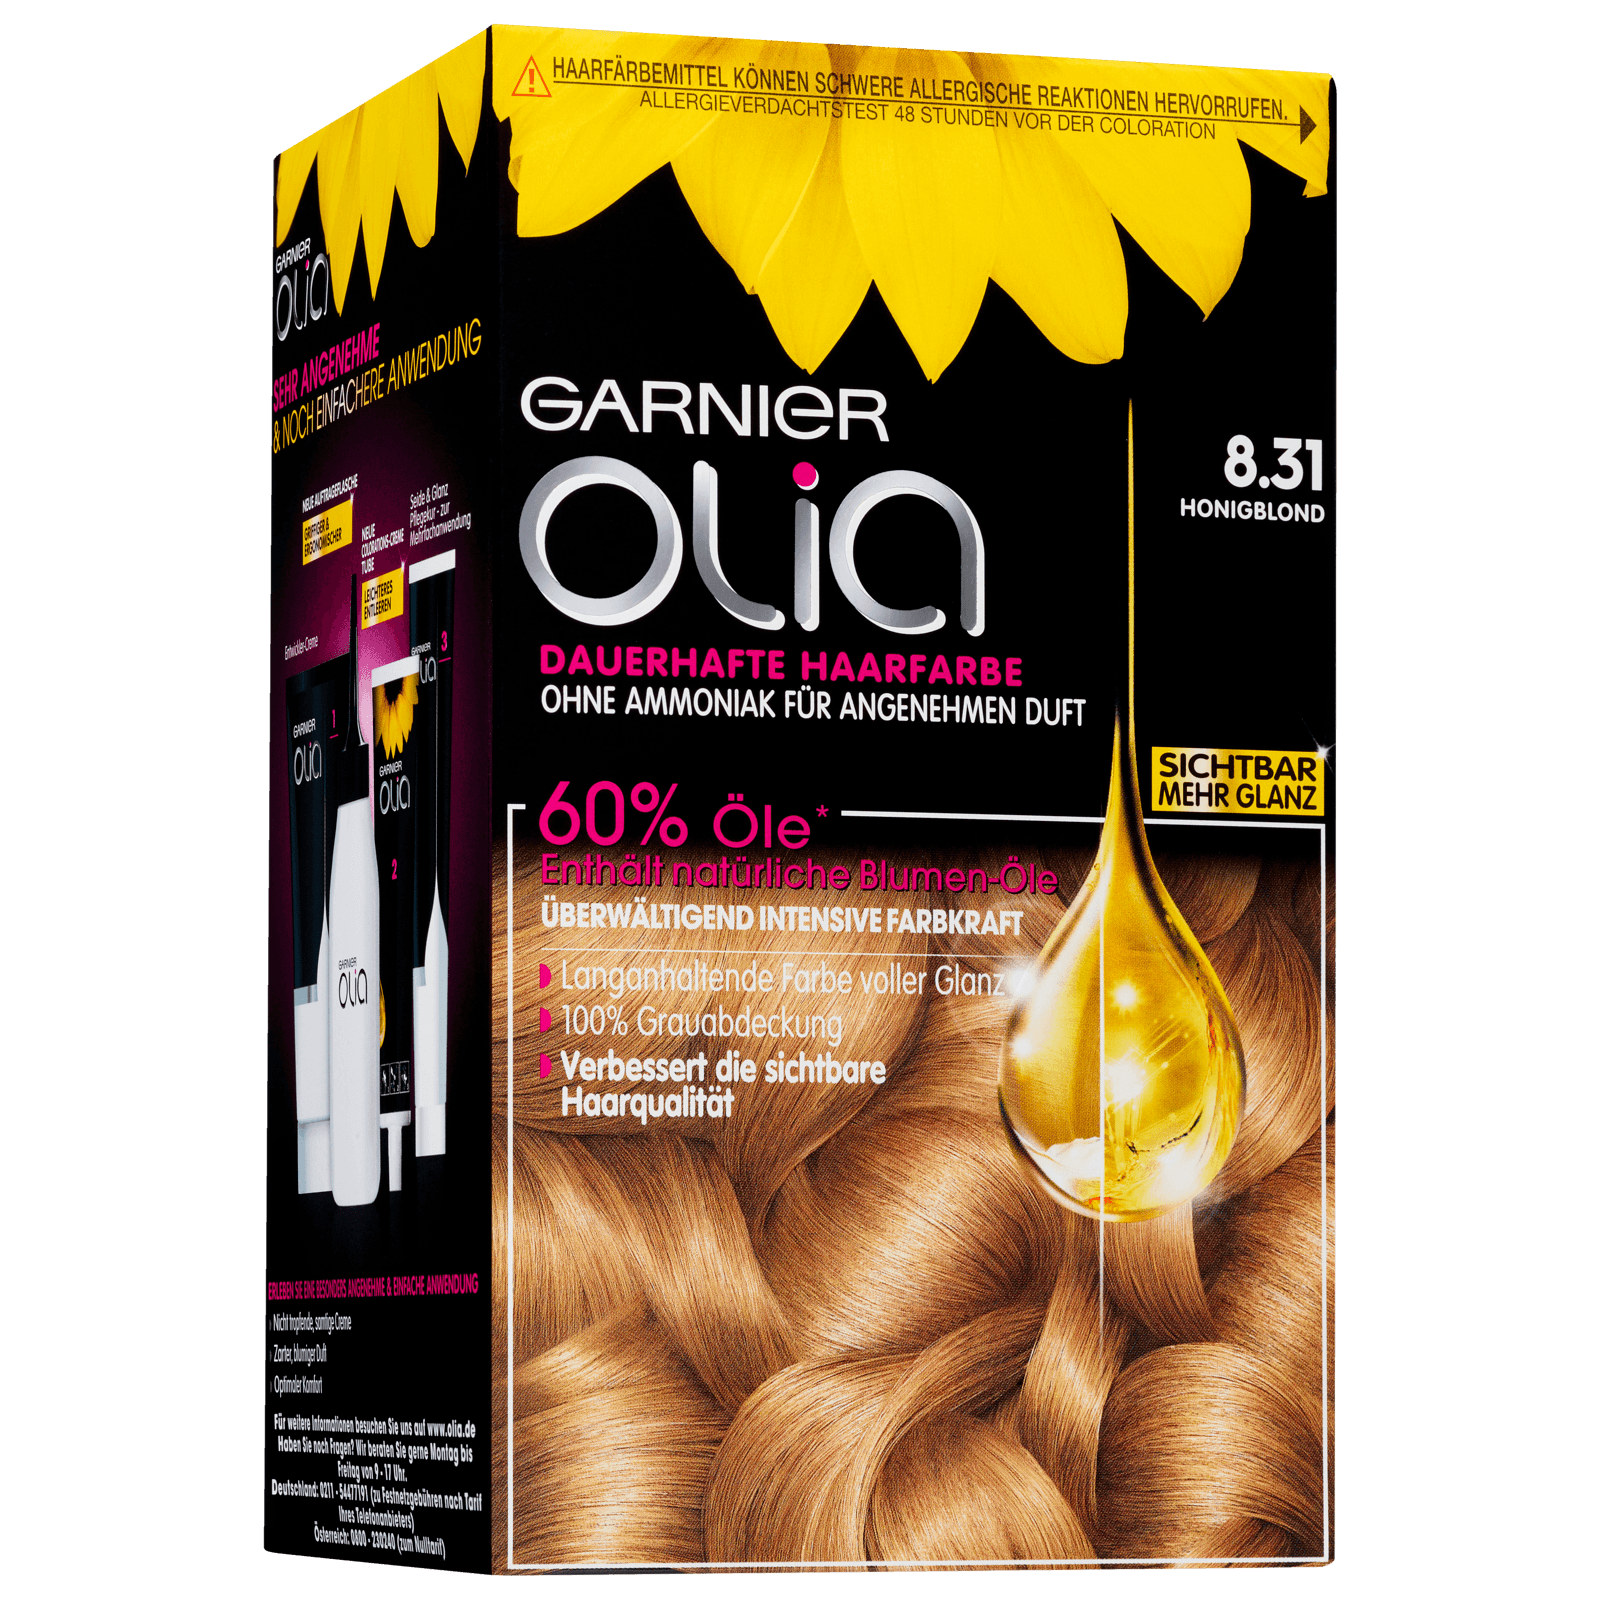 Garnier Olia Dauerhafte bei 8.31 online honigblond bestellen! REWE Haarfarbe